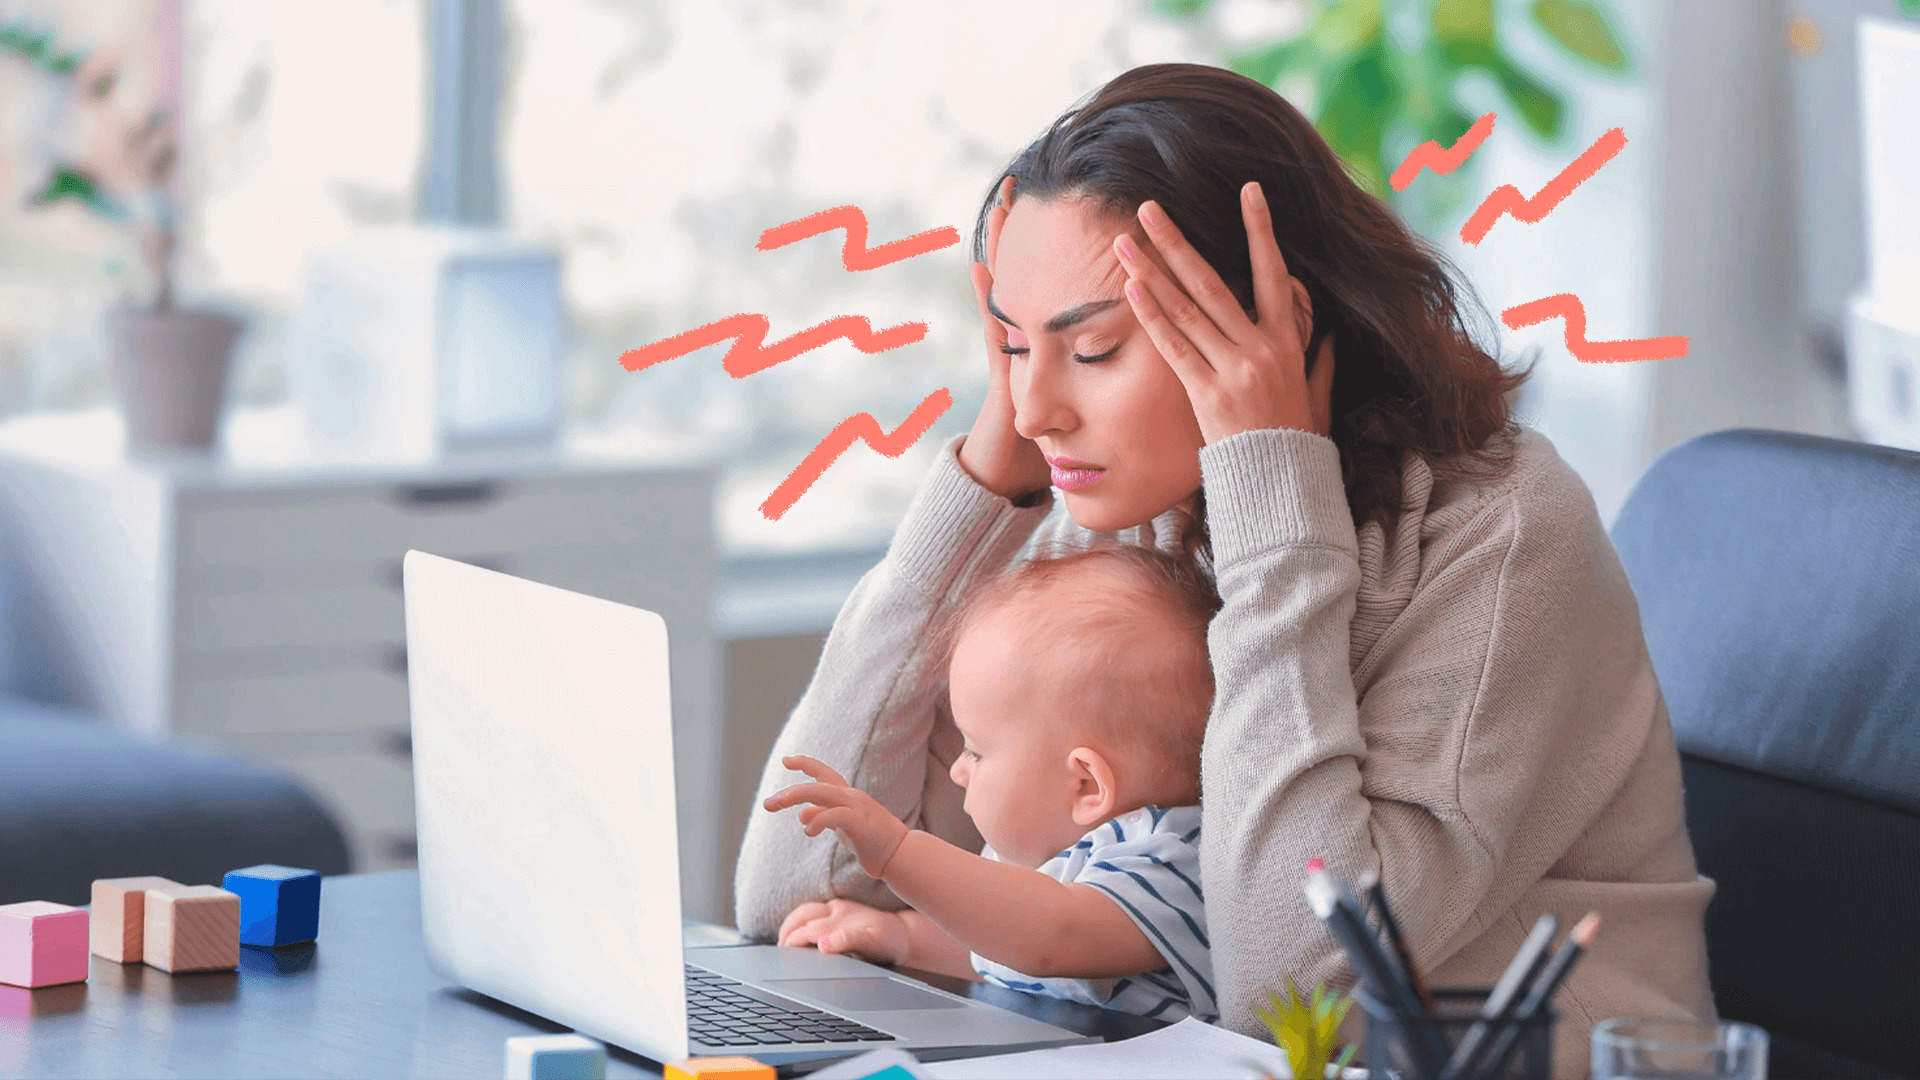 Uma mulher com um bebê no colo está em frente a um computador com as mãos na cabeça. A matéria traz perguntas sobre maternidade sem noção e sugestões de como respondê-las.